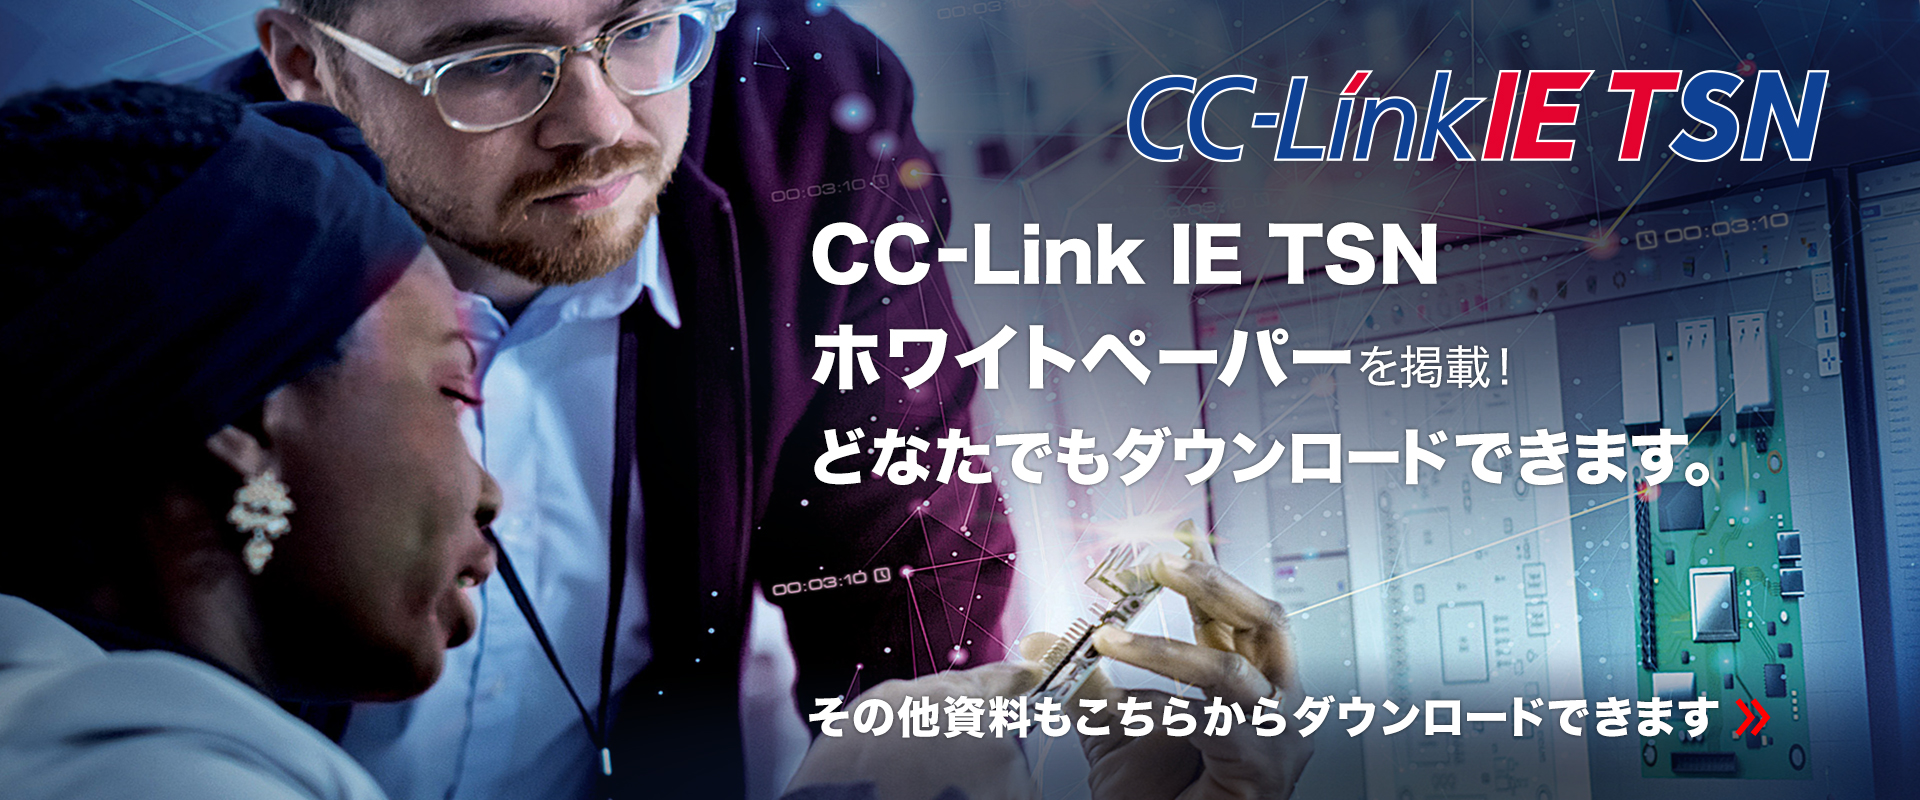 CC-Link IE TSNホワイトペーパーを掲載！どなたでもダウンロードできます。その他資料もこちらからダウンロードできます。